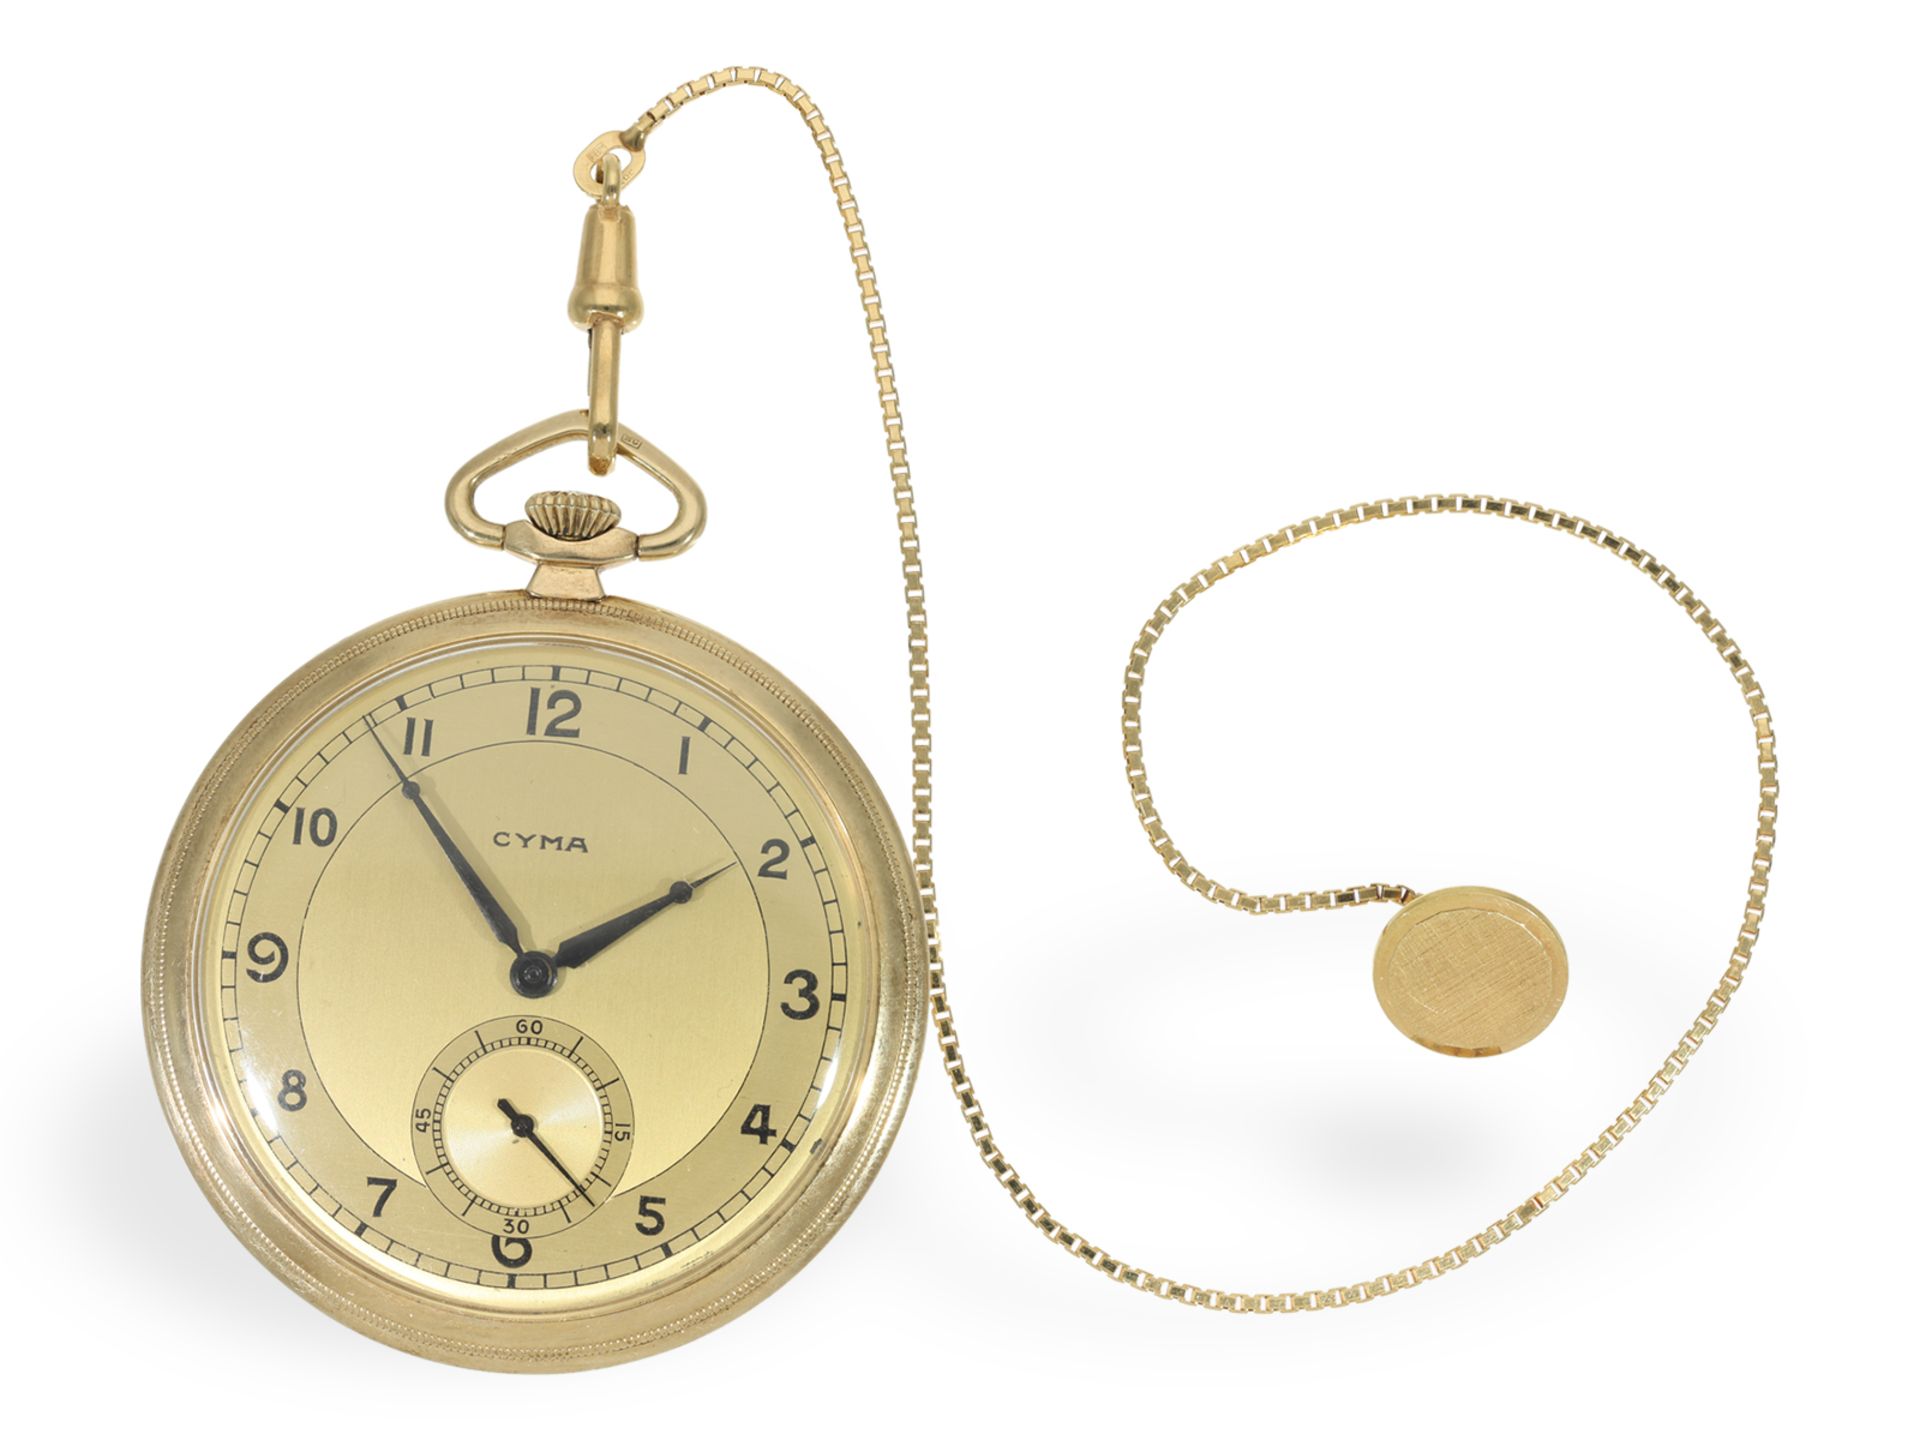 Taschenuhr: Art Deco Frackuhr im nahezu neuwertigen Zustand mit goldener Uhrenkette, um 1930 - Bild 2 aus 7